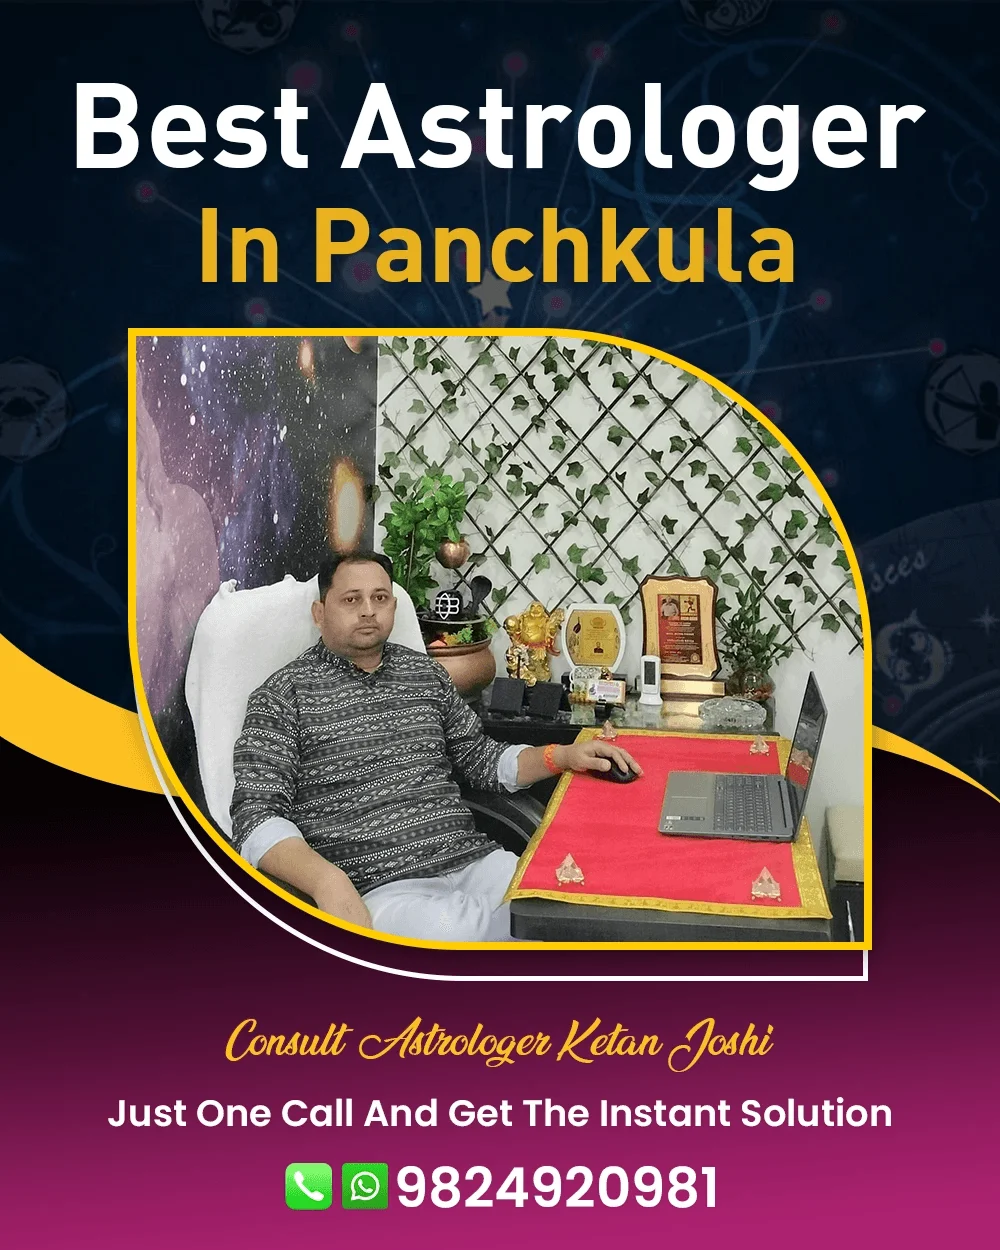 Best Astrologer In Panchkula